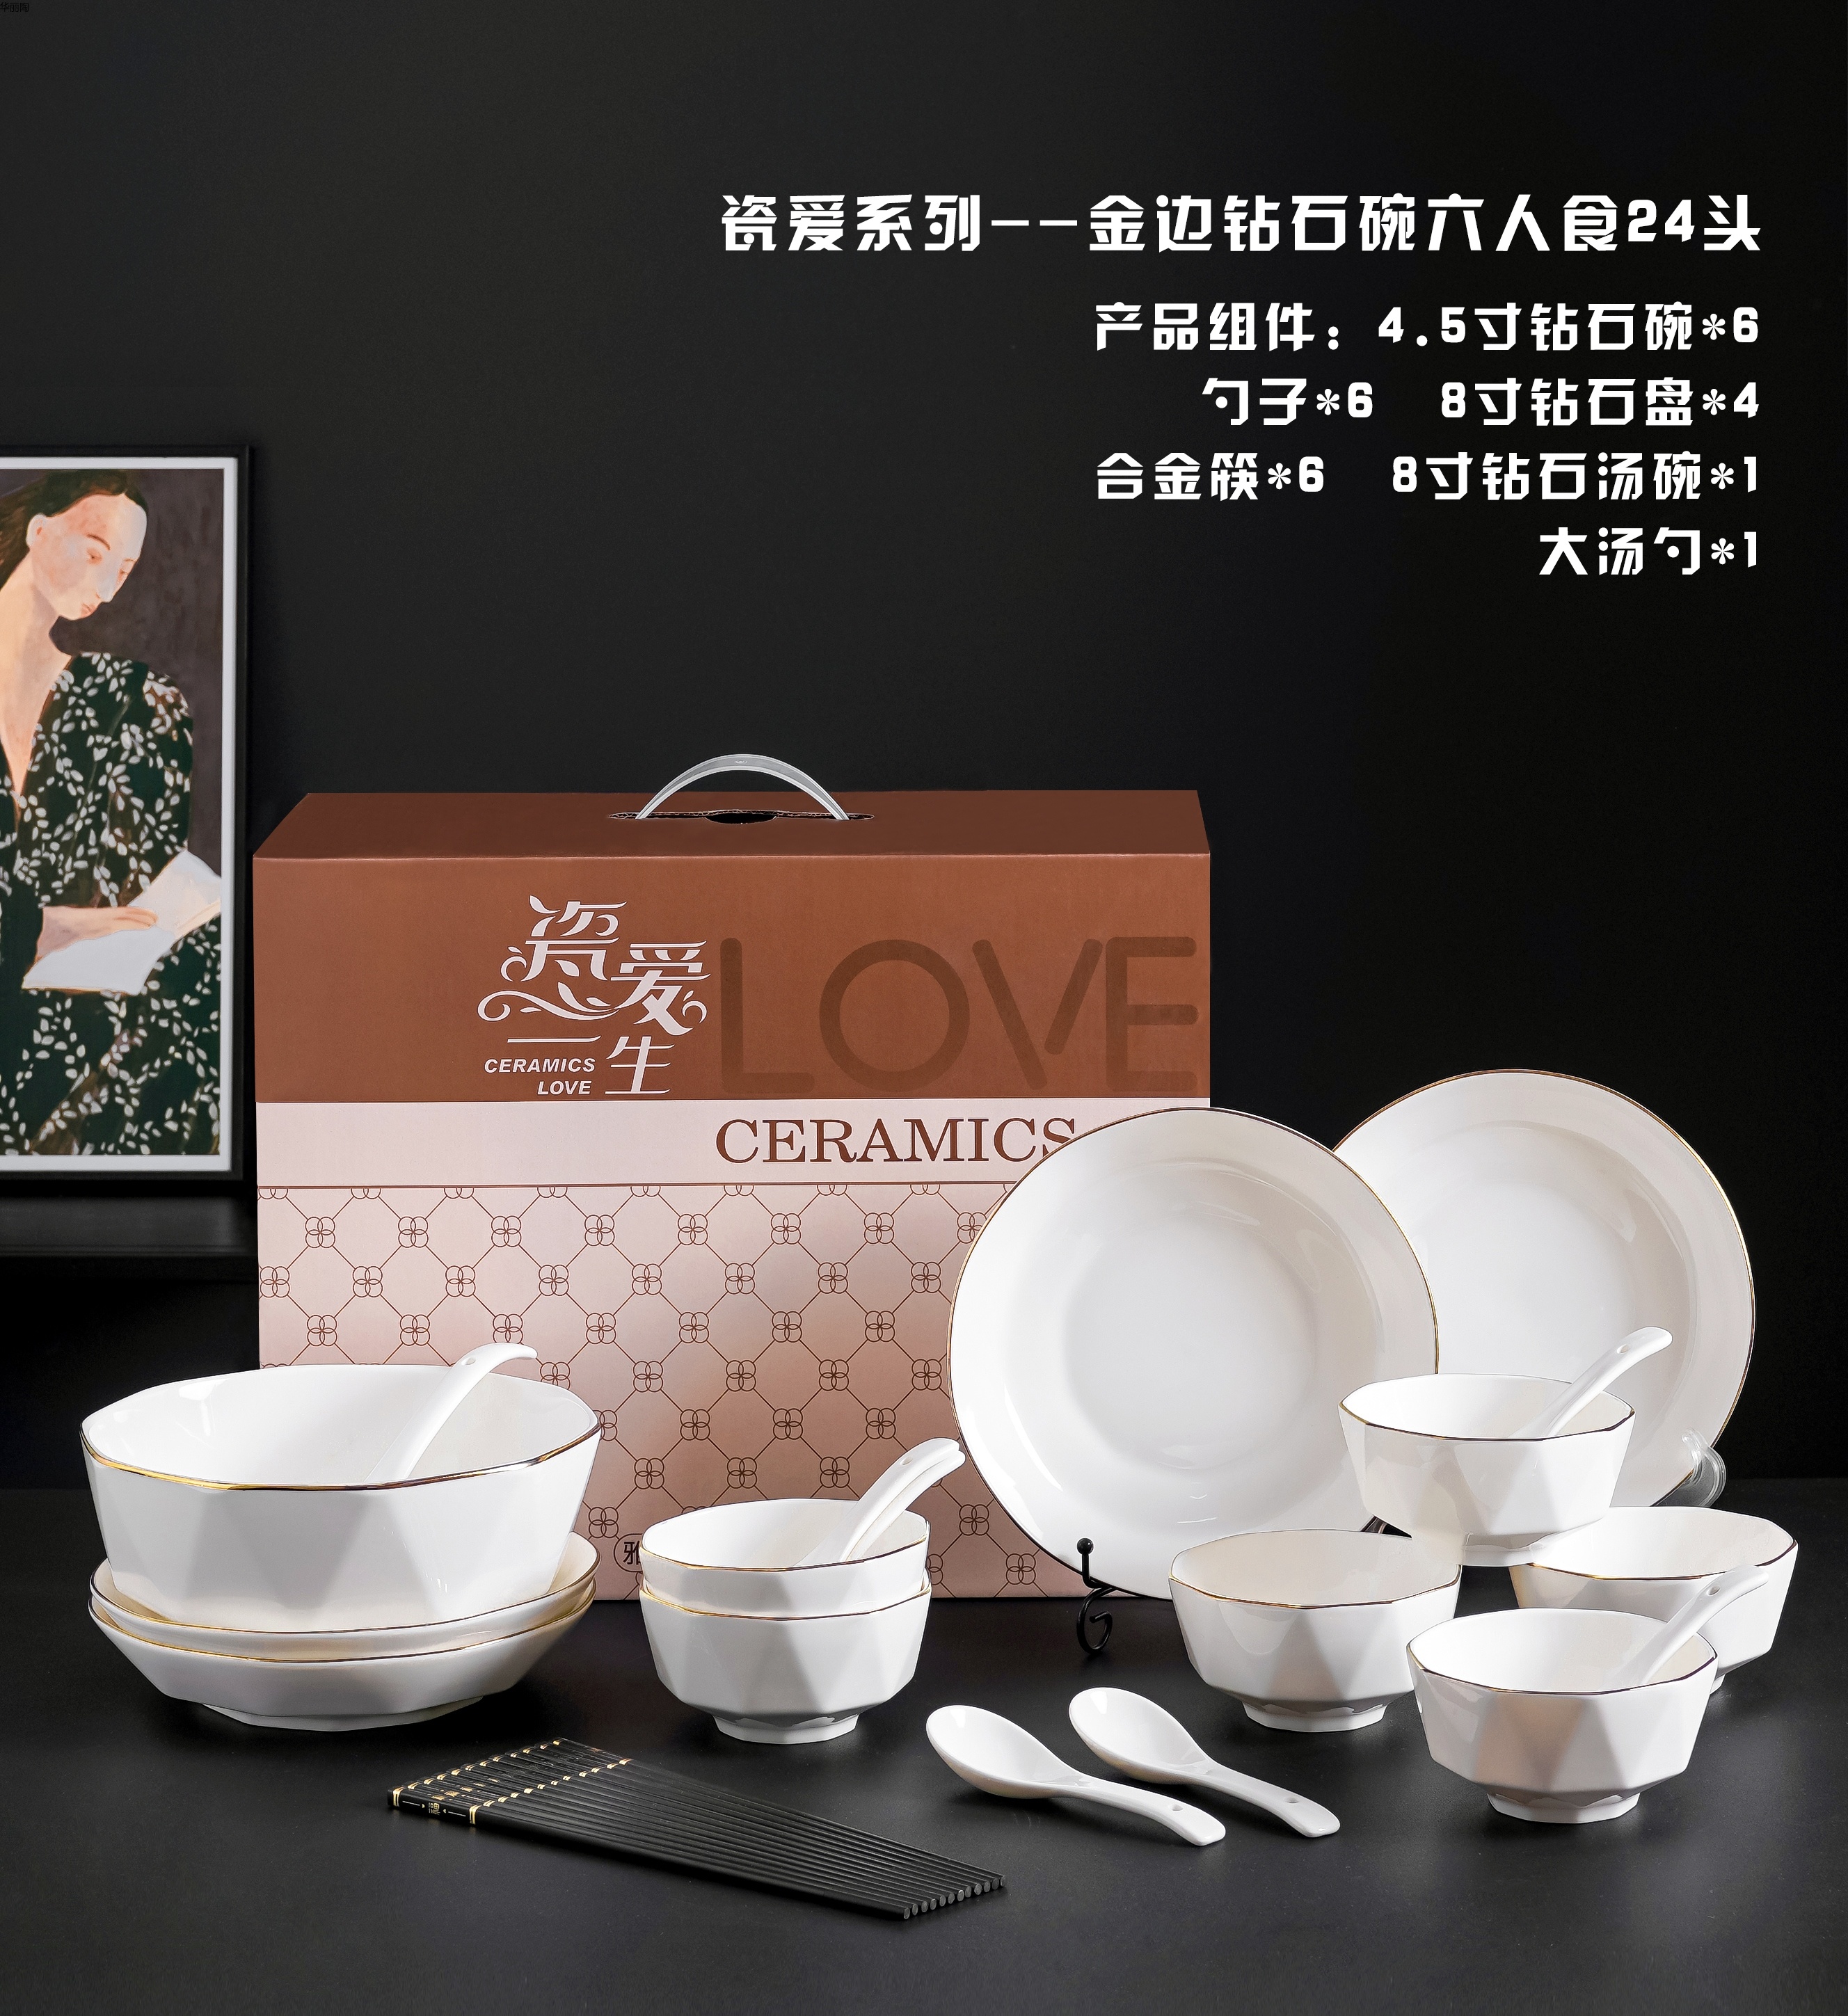 日式餐具日式碗陶瓷碗创意礼品陶瓷餐具礼品碗陶瓷碗盘中式餐具西式餐具详情52